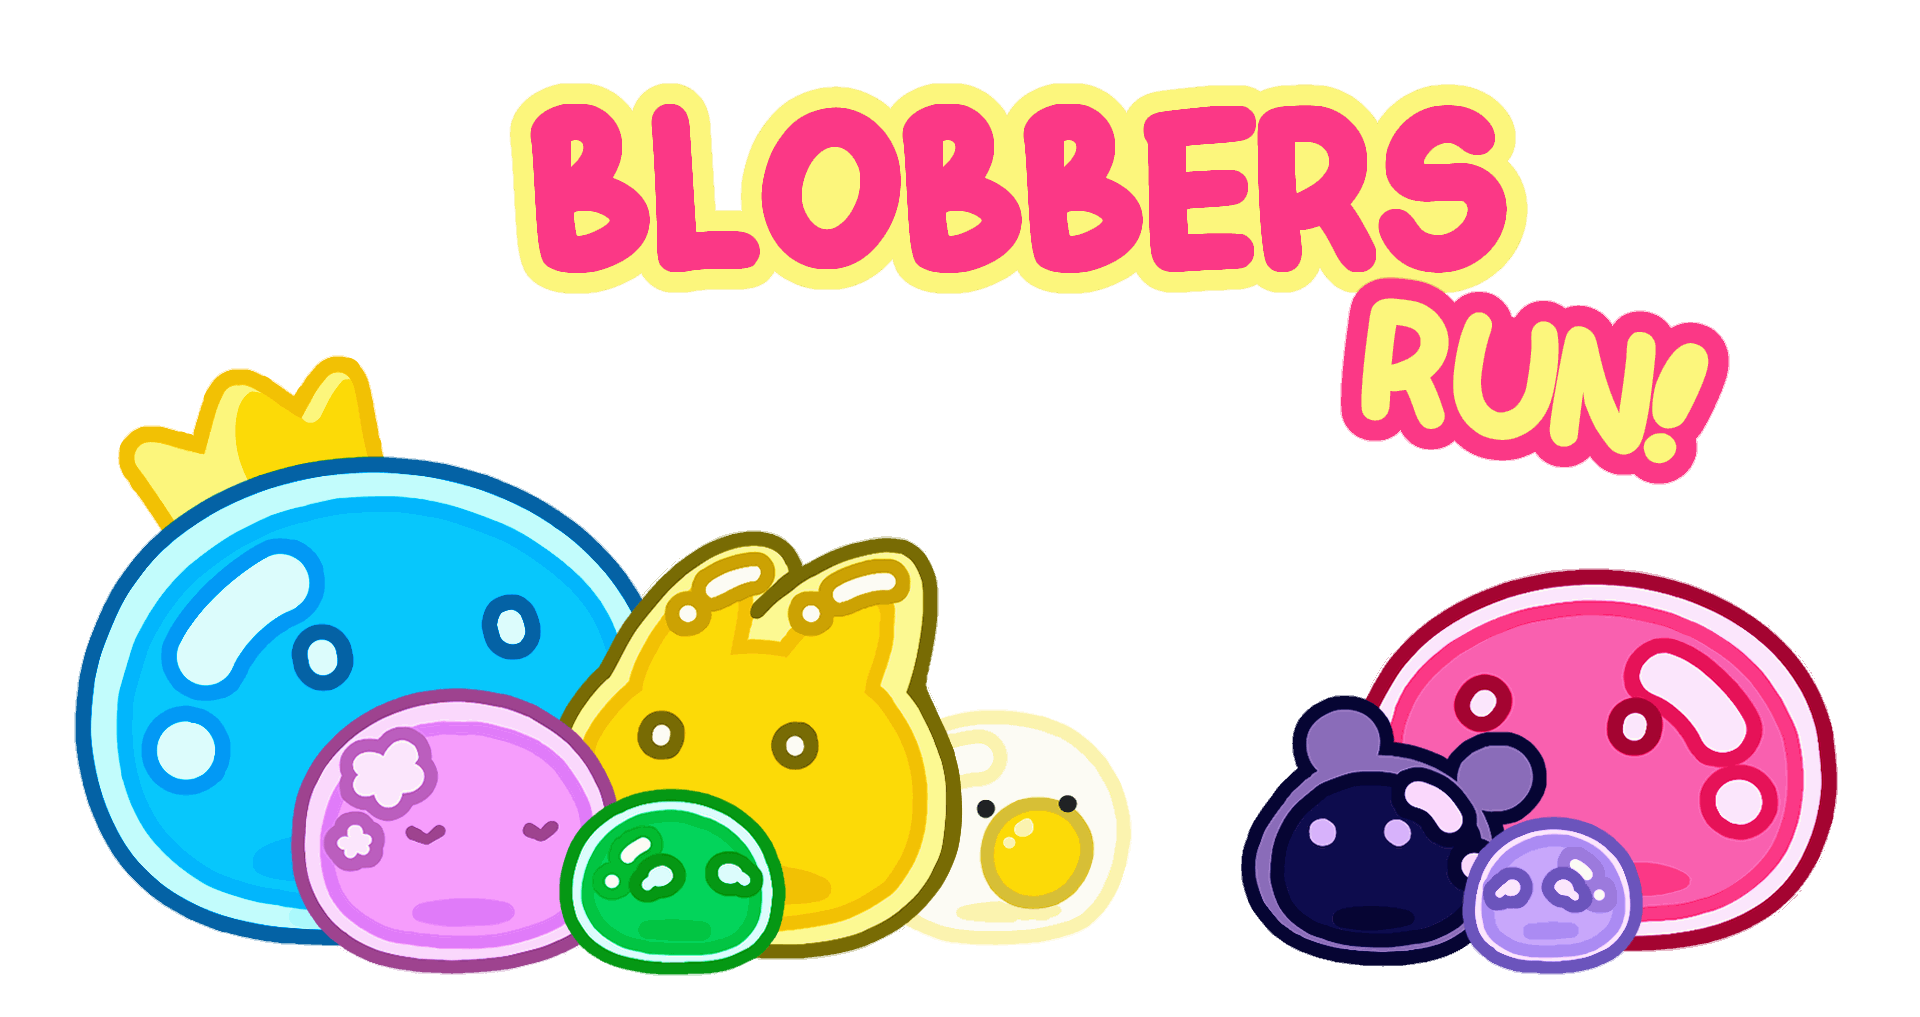 Blobbers Run!